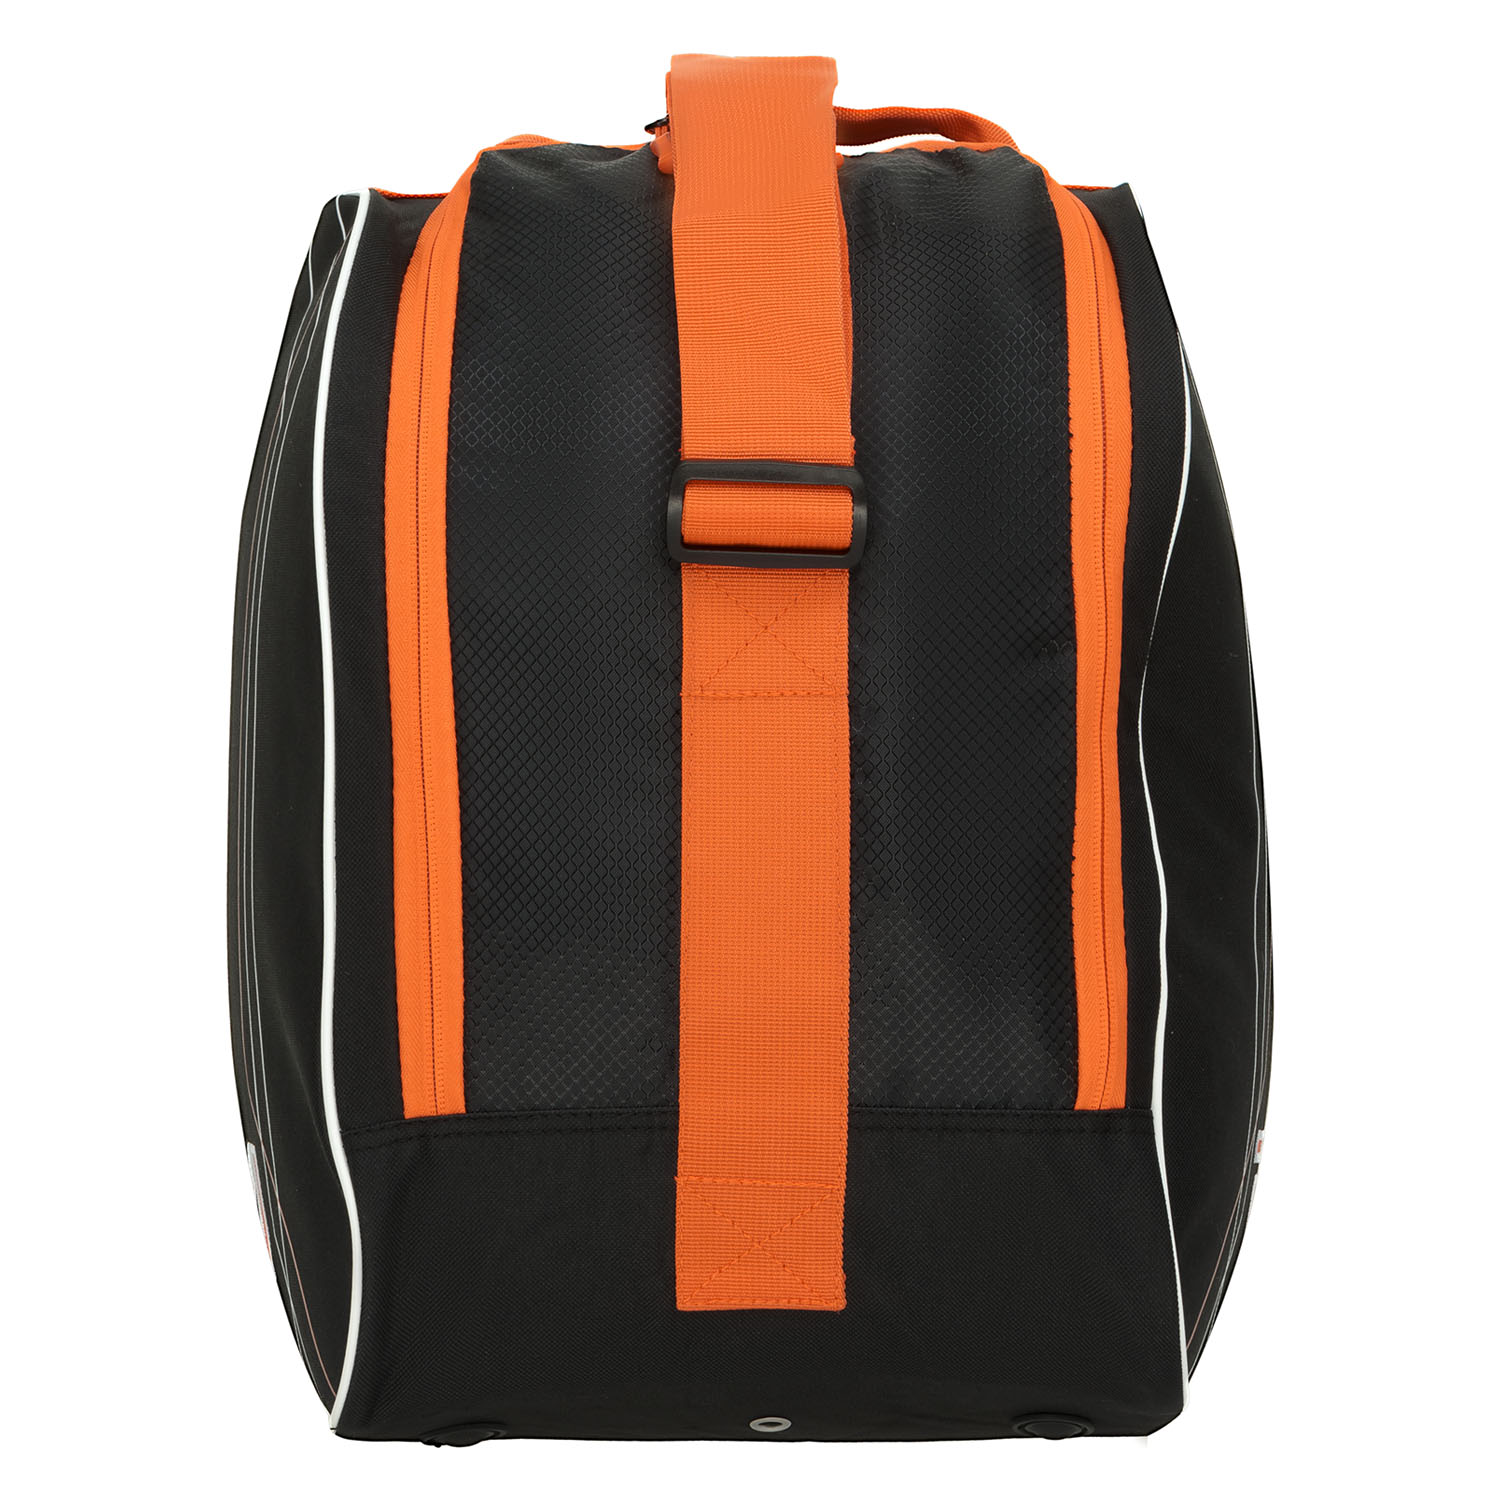 Сумка для ботинок Tecnica Skiboot bag Premium Black/Orange